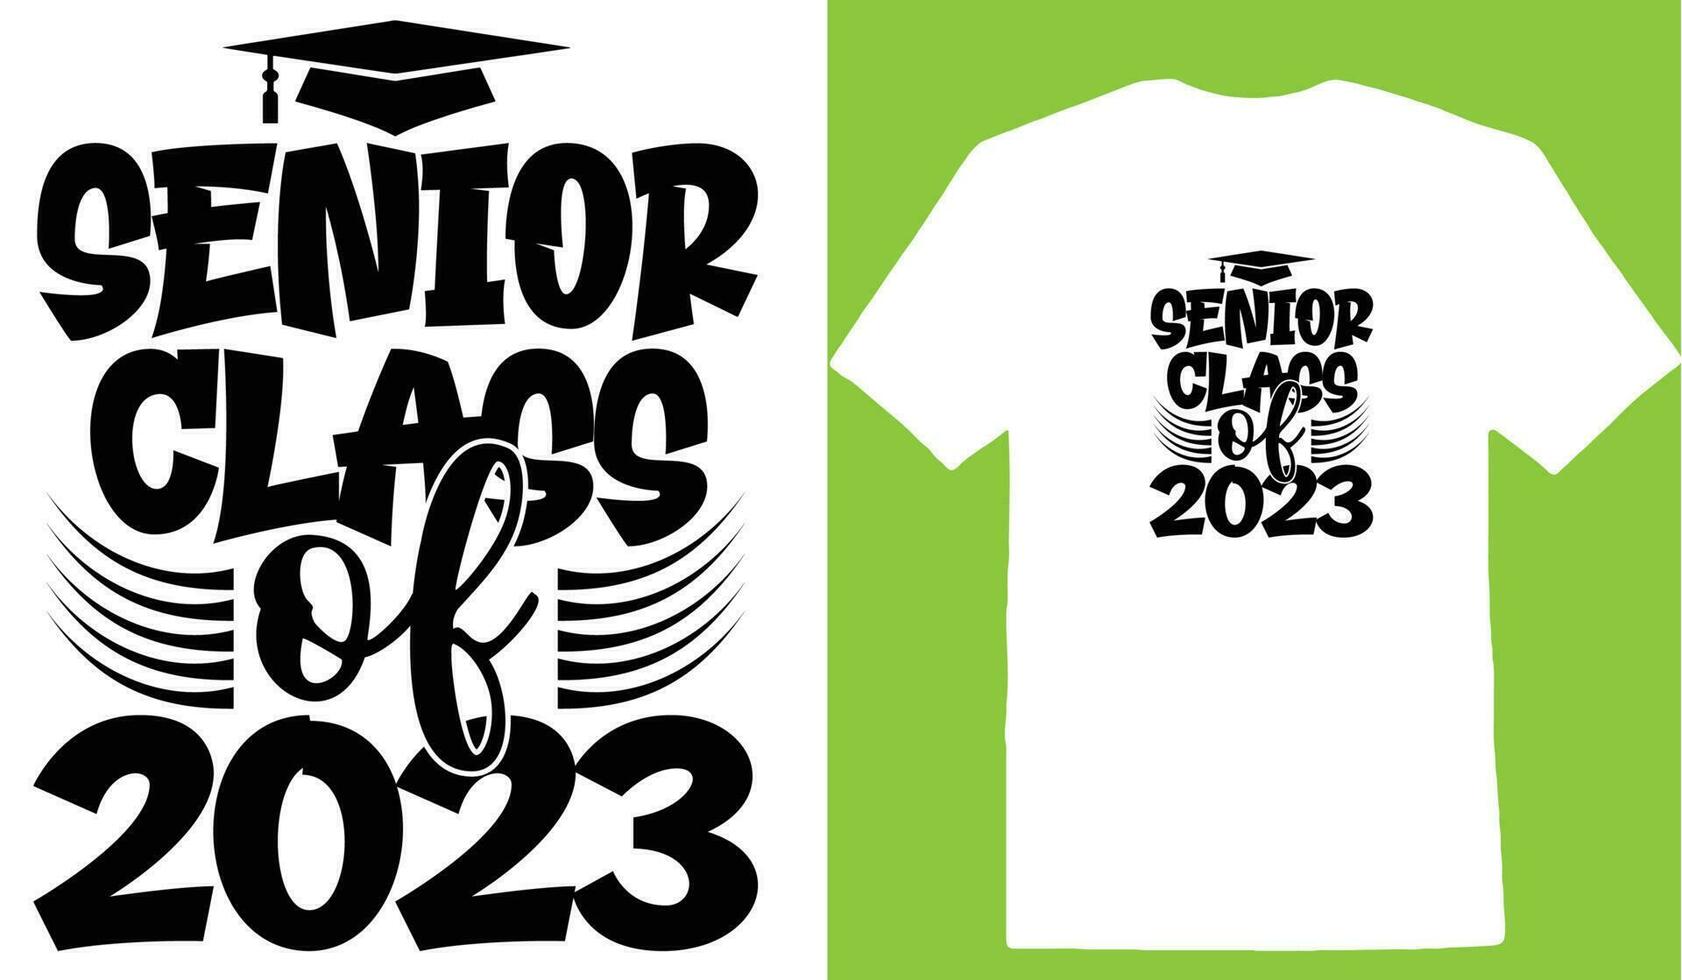 Senior Class Of 2023 T-shirt vector